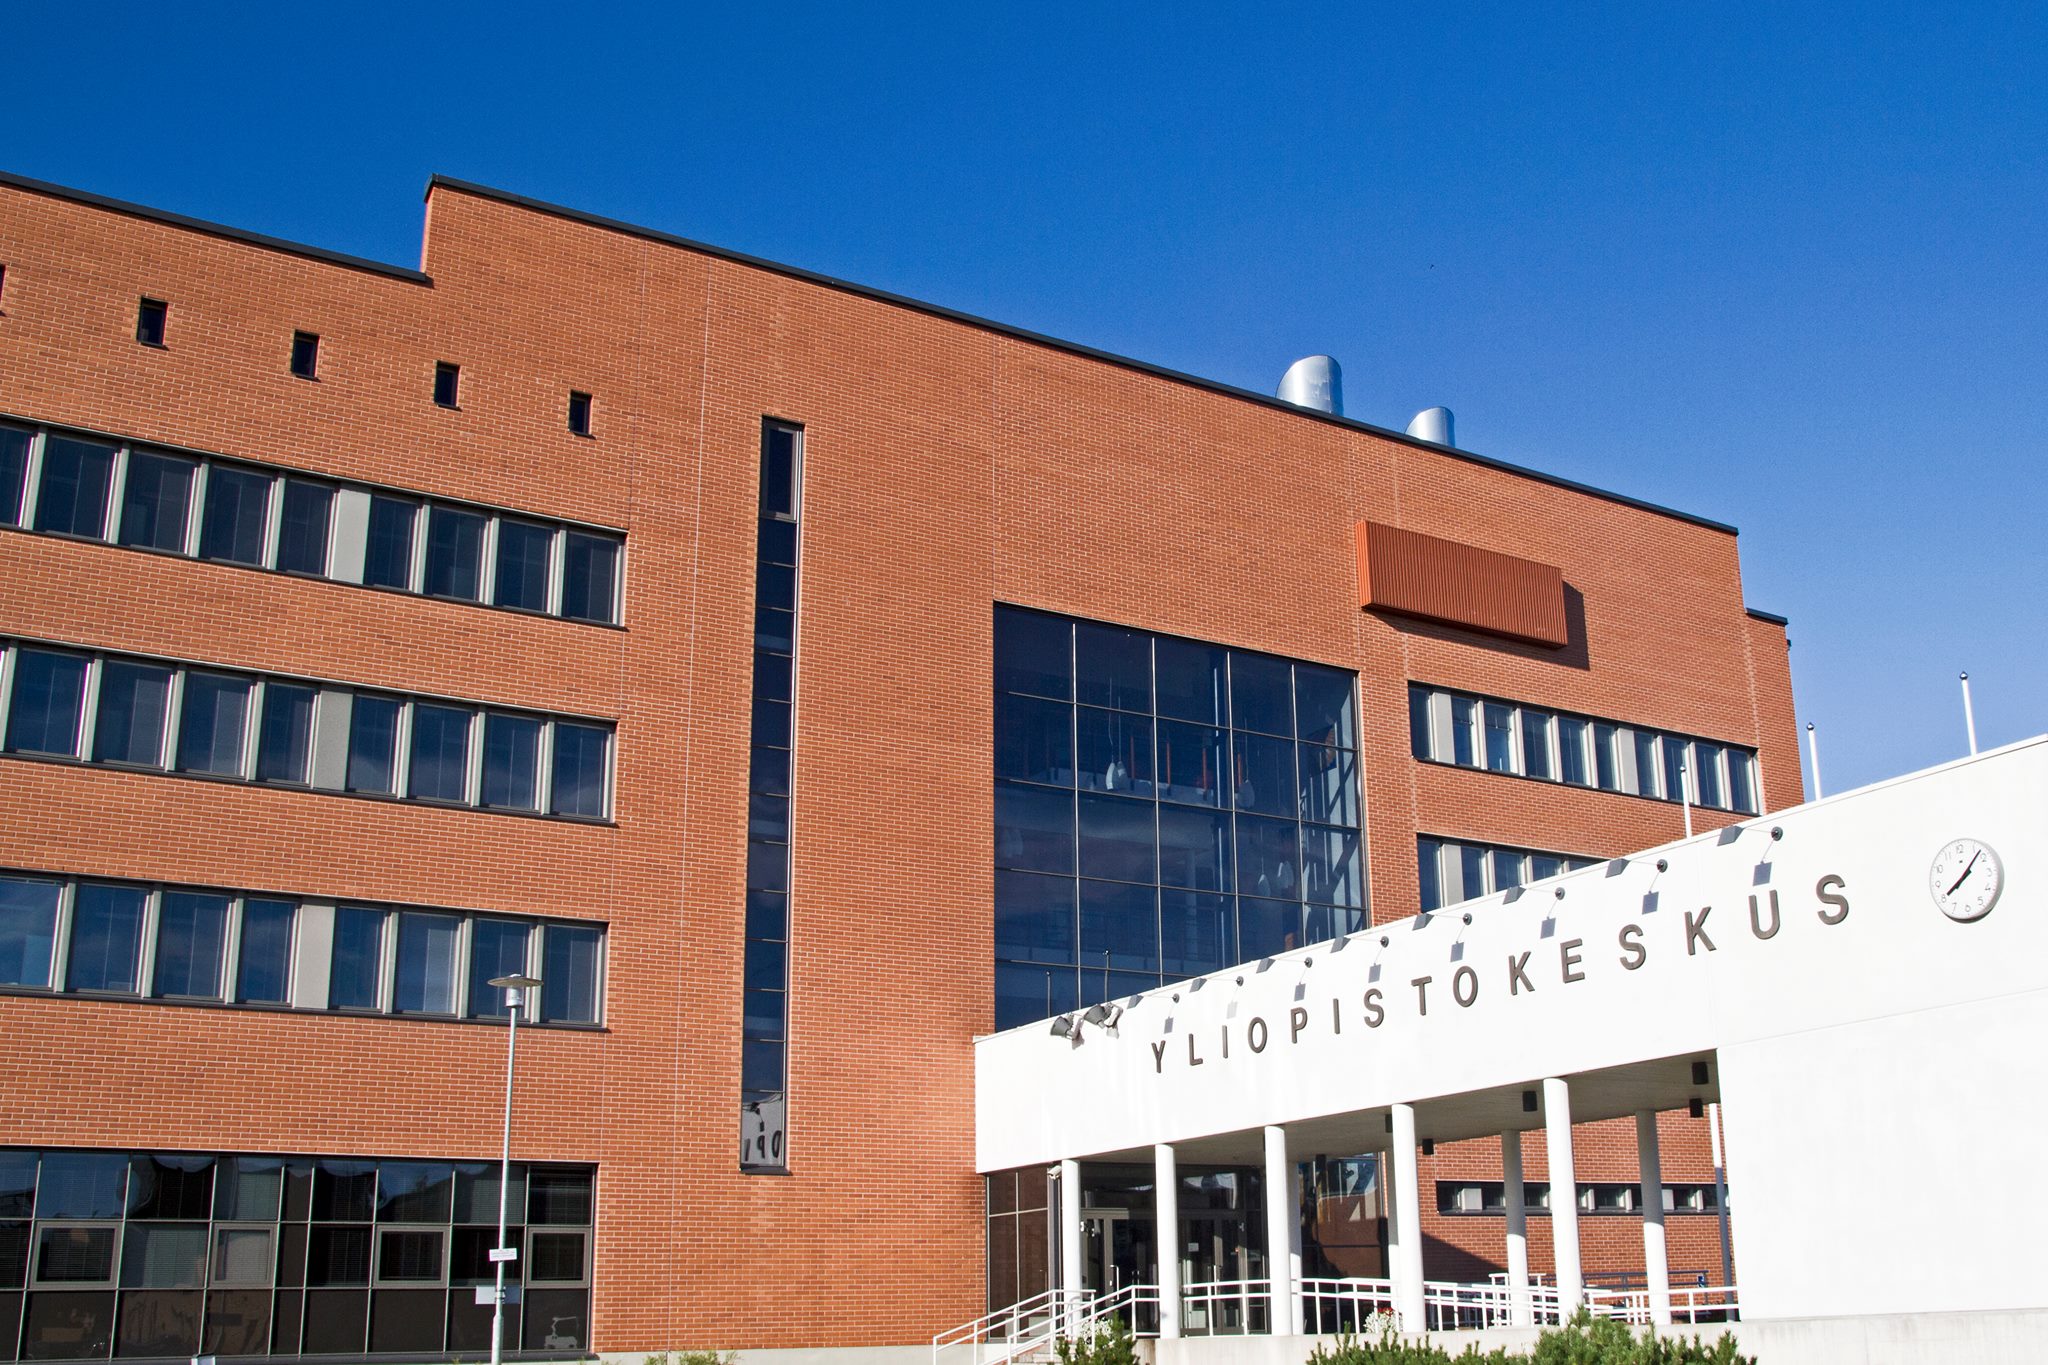 Kokkolan yliopistokeskus Chydenius